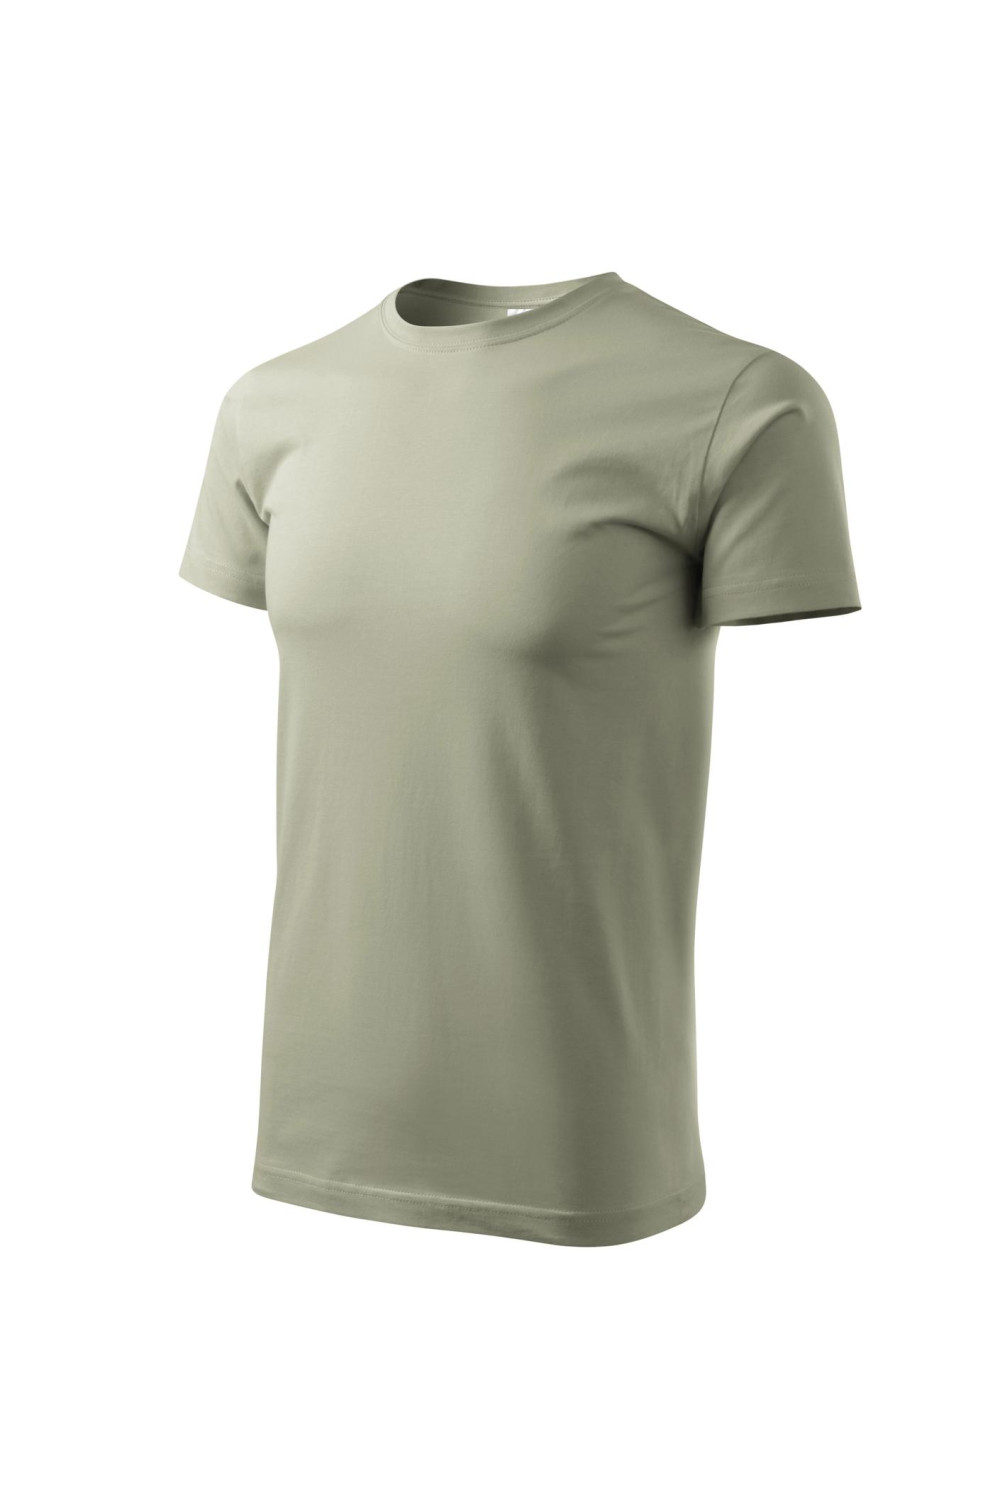 Koszulka męska 100% bawełna BASIC 129  kolor jasny khaki